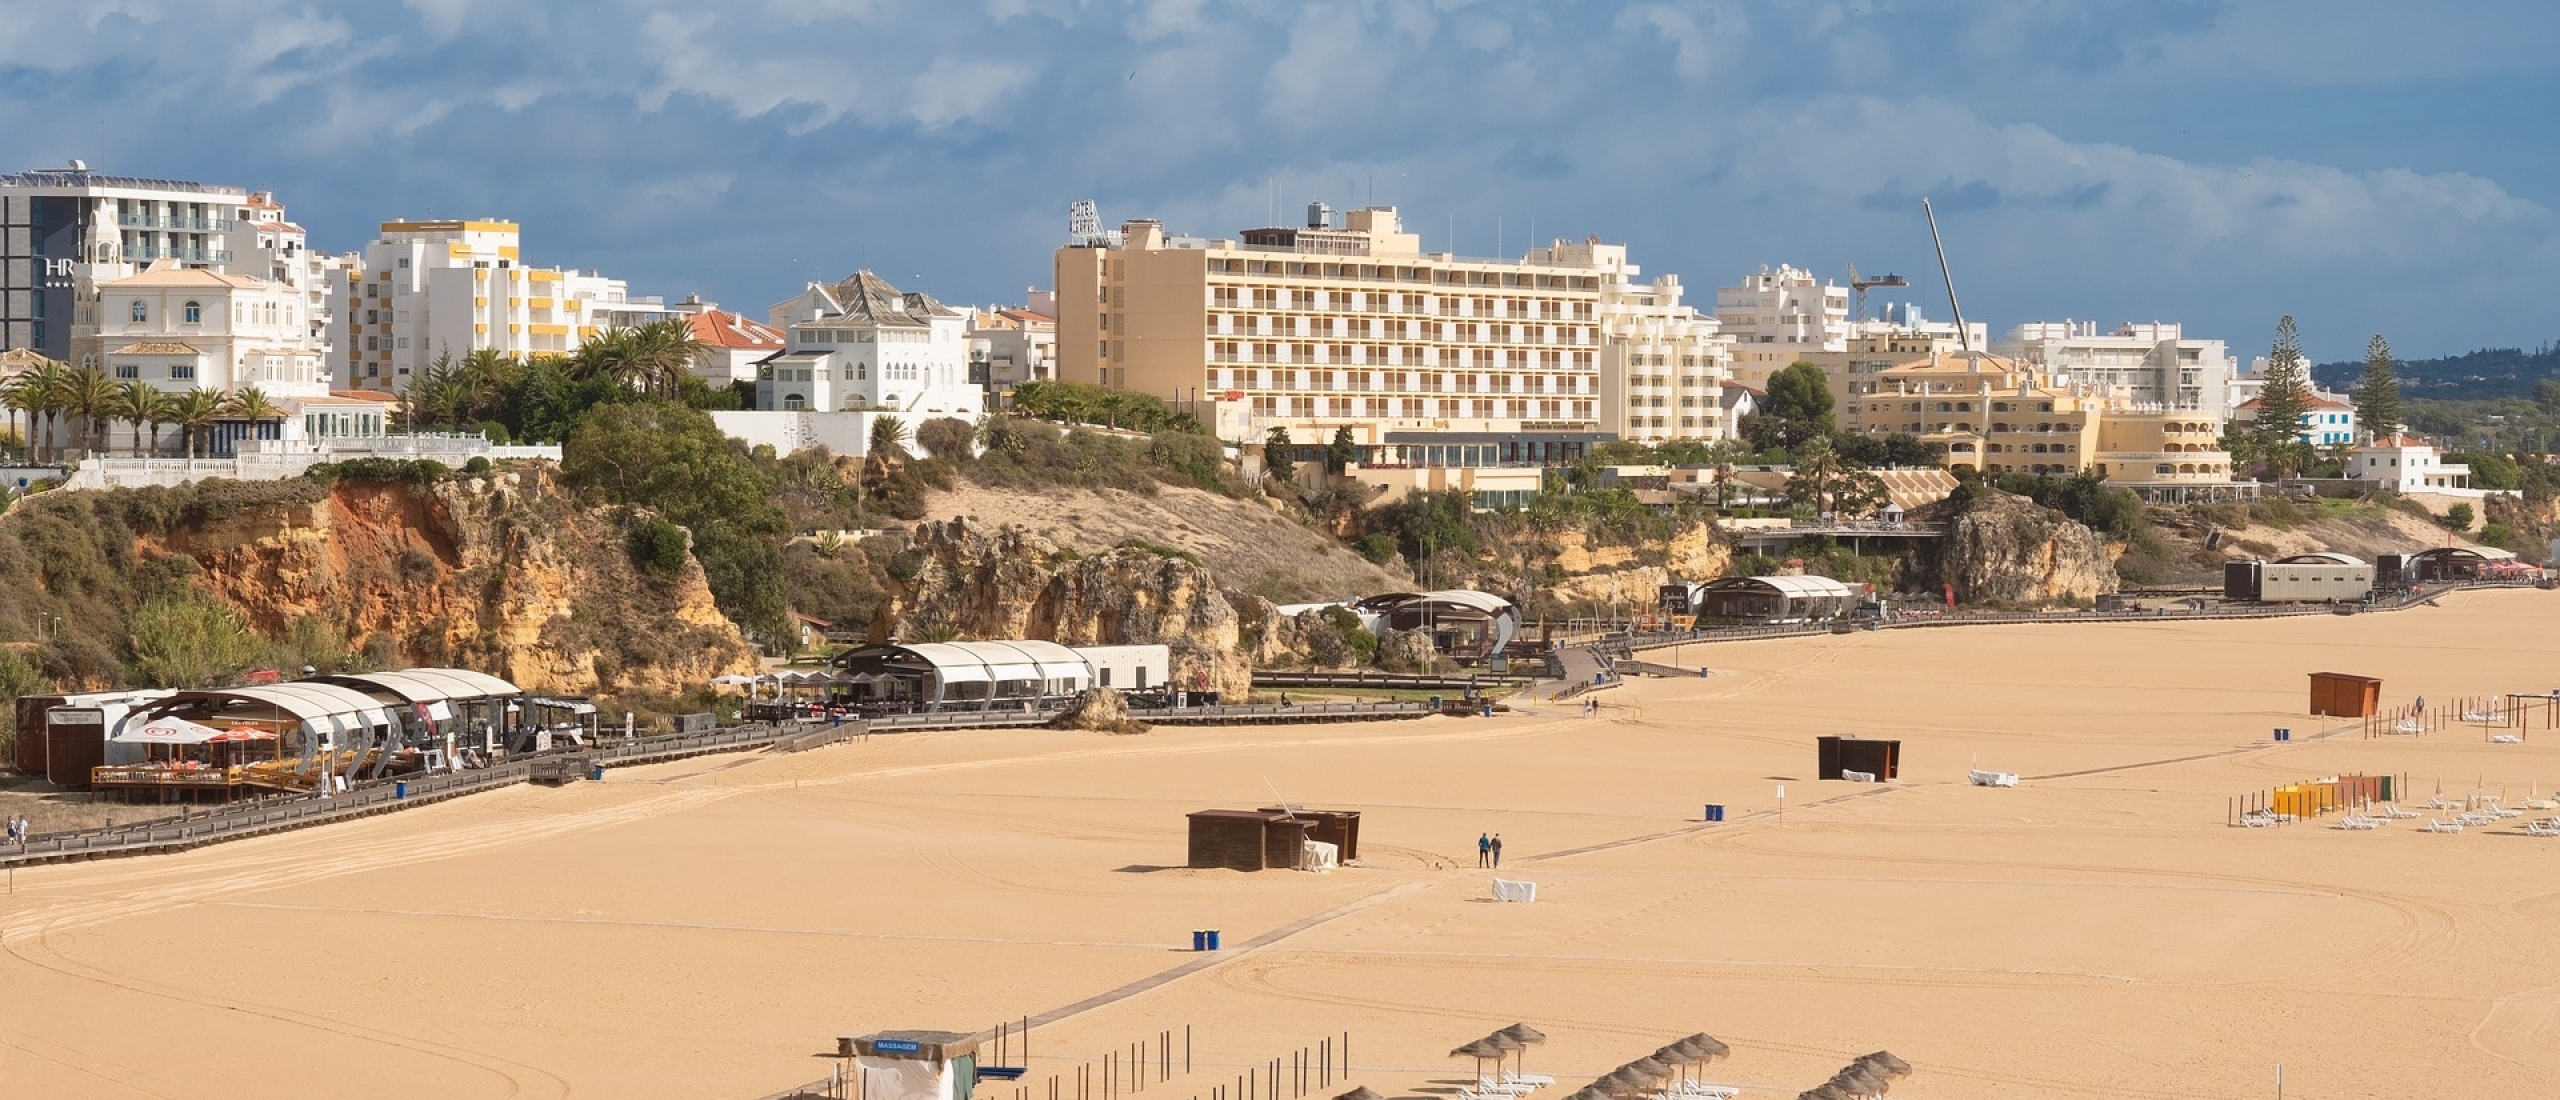 Vakantie Algarve vanaf Airport Weeze - Tips, bezienswaardigheden en beste deals naar de Algarve!